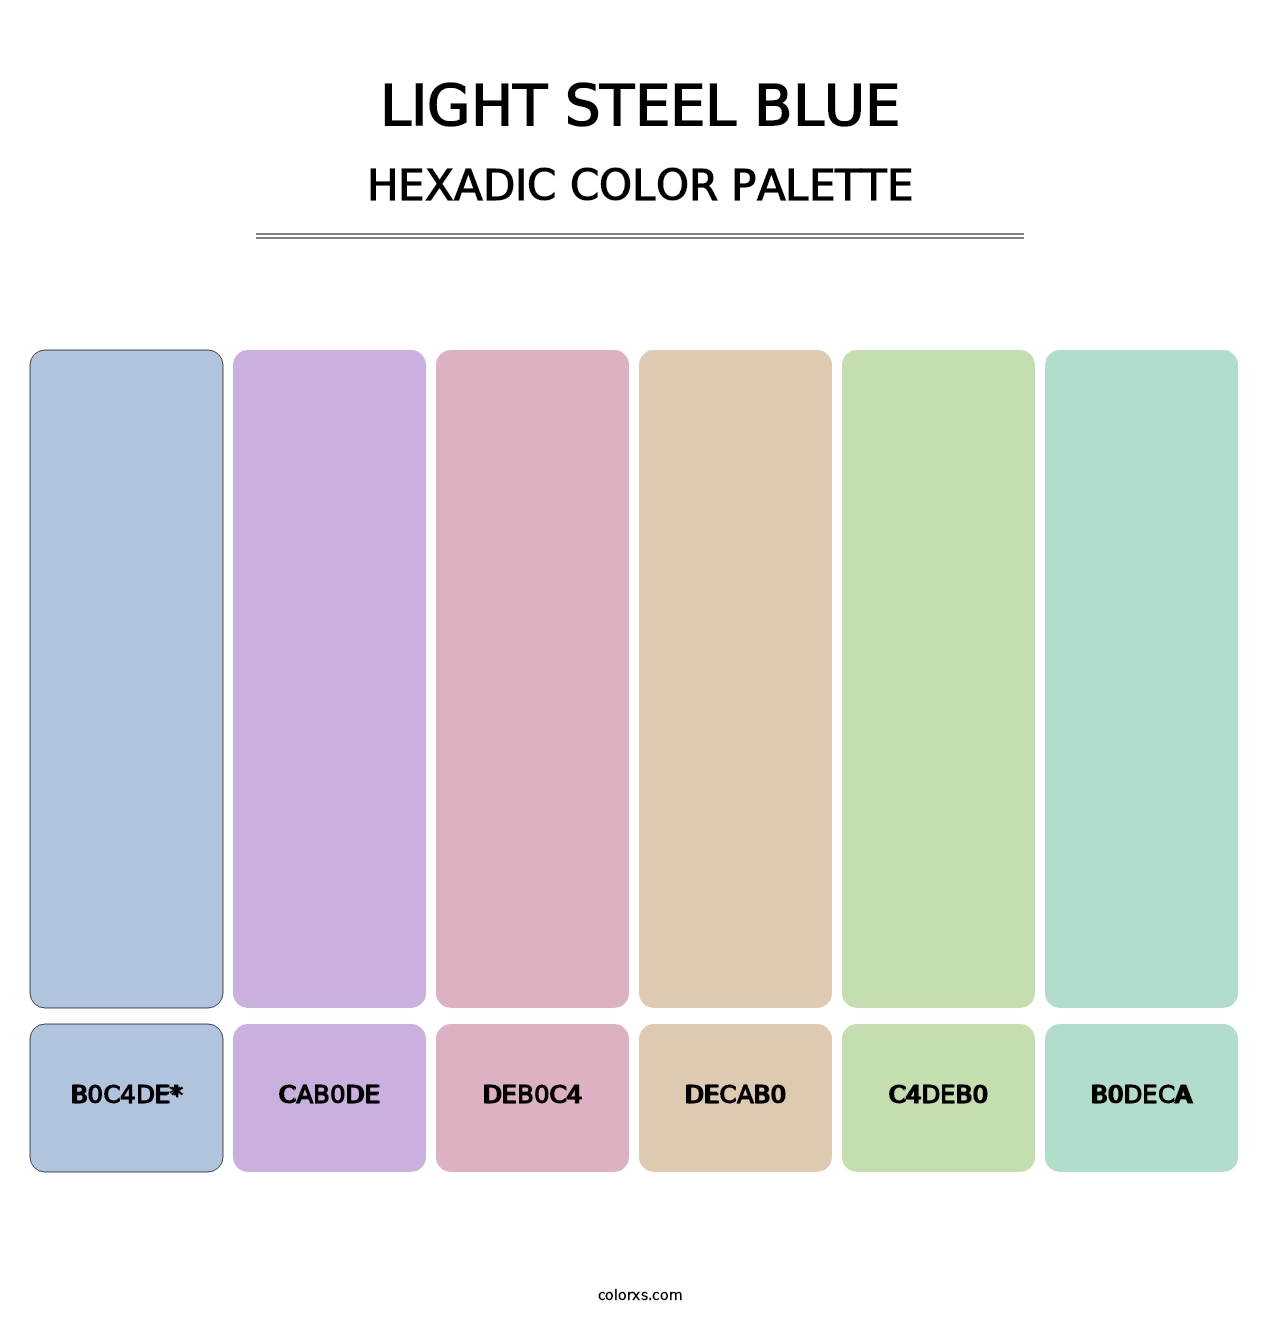 Light Steel Blue - Hexadic Color Palette